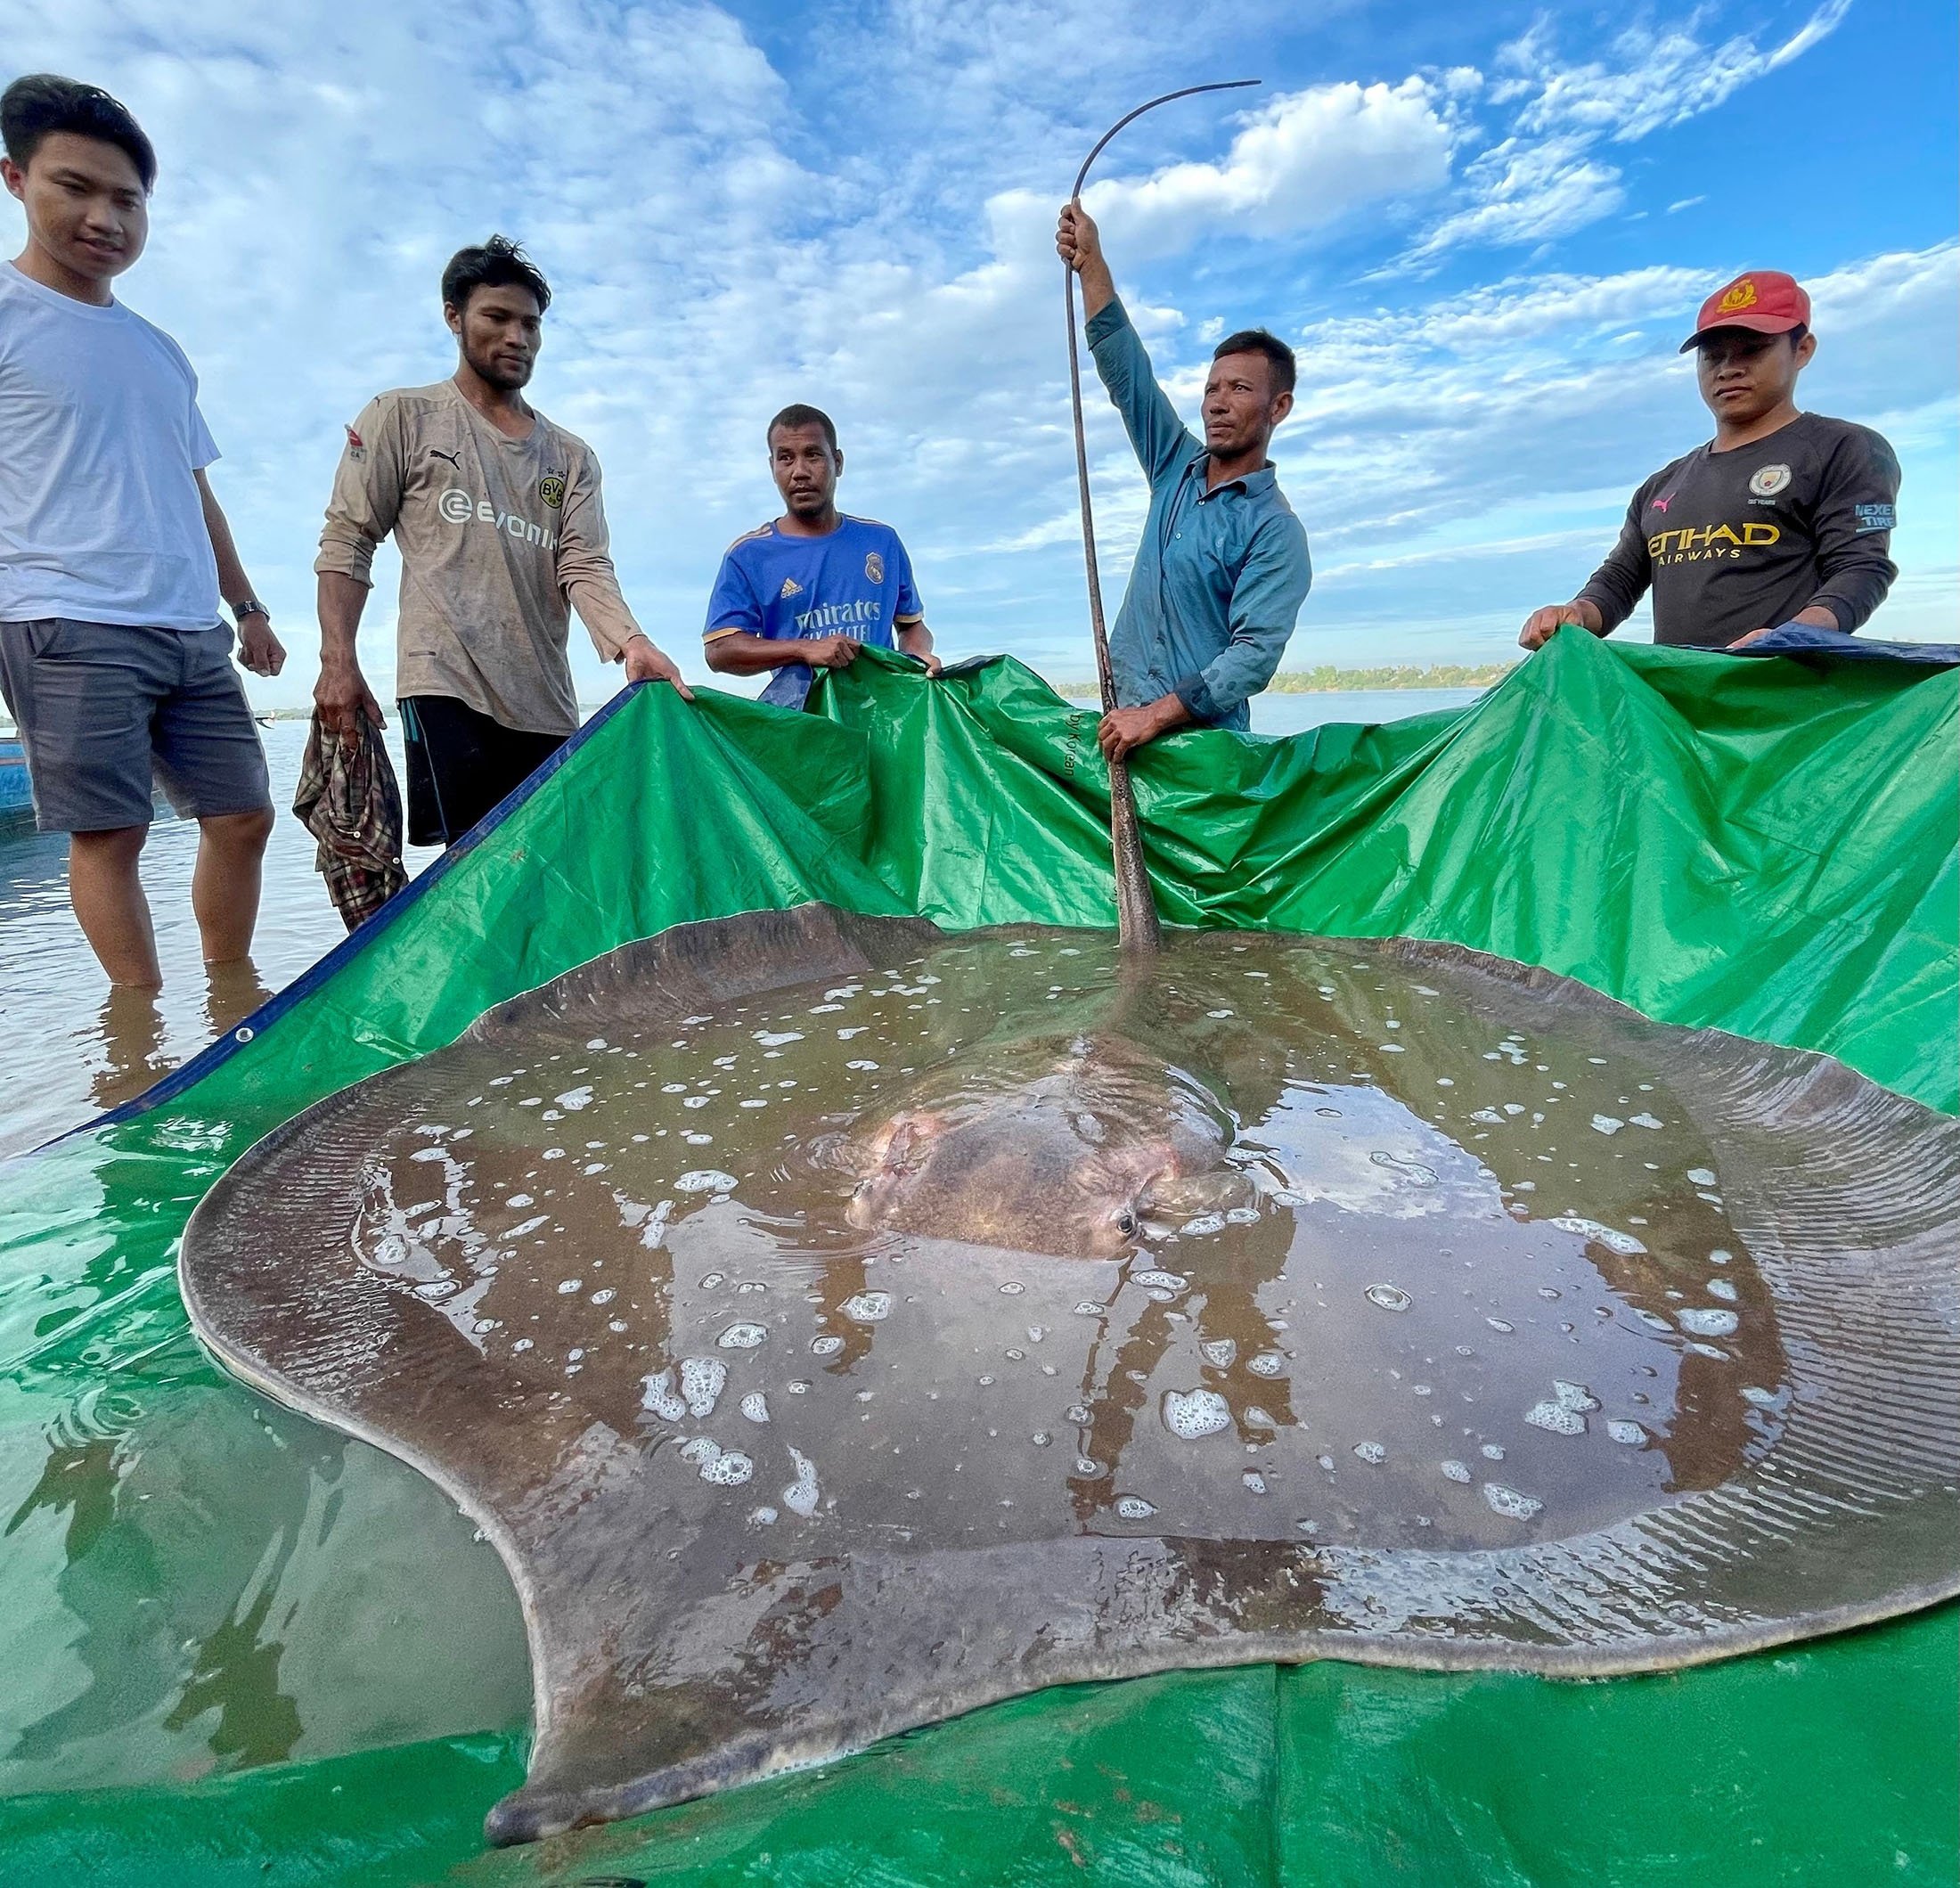 Undersea giant: Fishermen accidentally hook giant endangered stingray